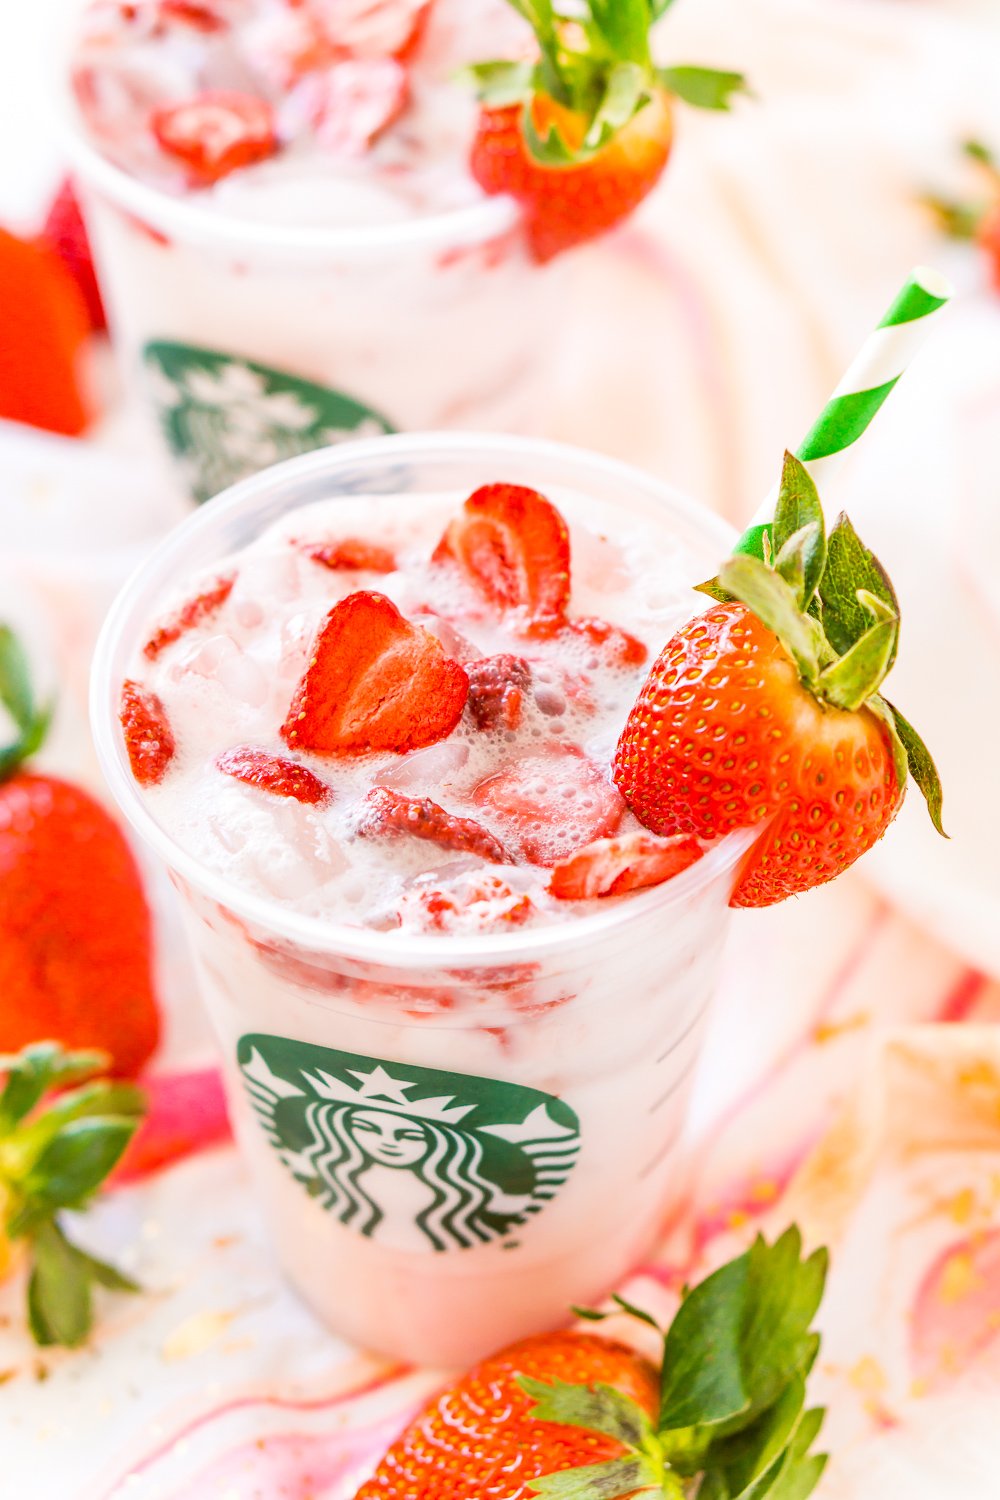 Dieser Starbucks Pink Drink ist ein preiswerteres und ebenso leckeres Rezept, um Ihr fruchtiges Lieblingsgetränk von Starbucks direkt zu Hause zuzubereiten, mit Acai-Beerentee, Kokosmilch, weißem Traubensaft, einfachem Sirup und gefriergetrockneten Erdbeeren!